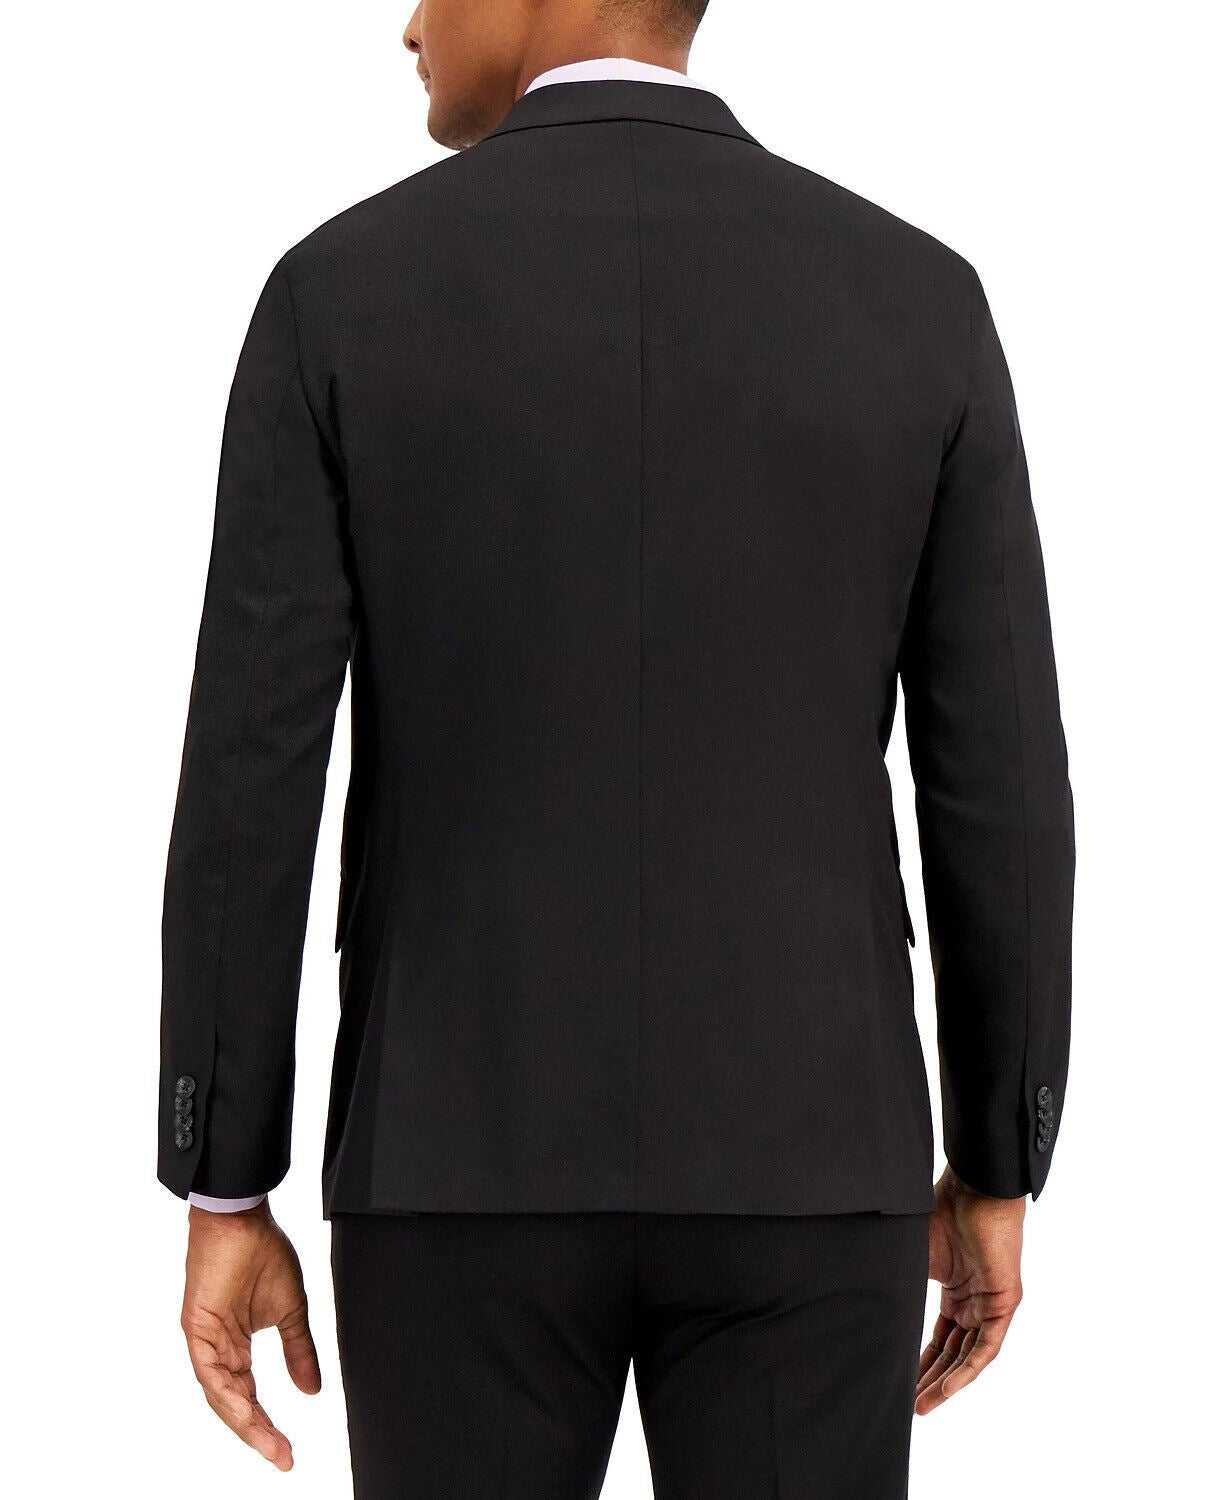 Kenneth Cole Men's Suit 37R / 31 x 32 Black Techni-Cole Slim Fit